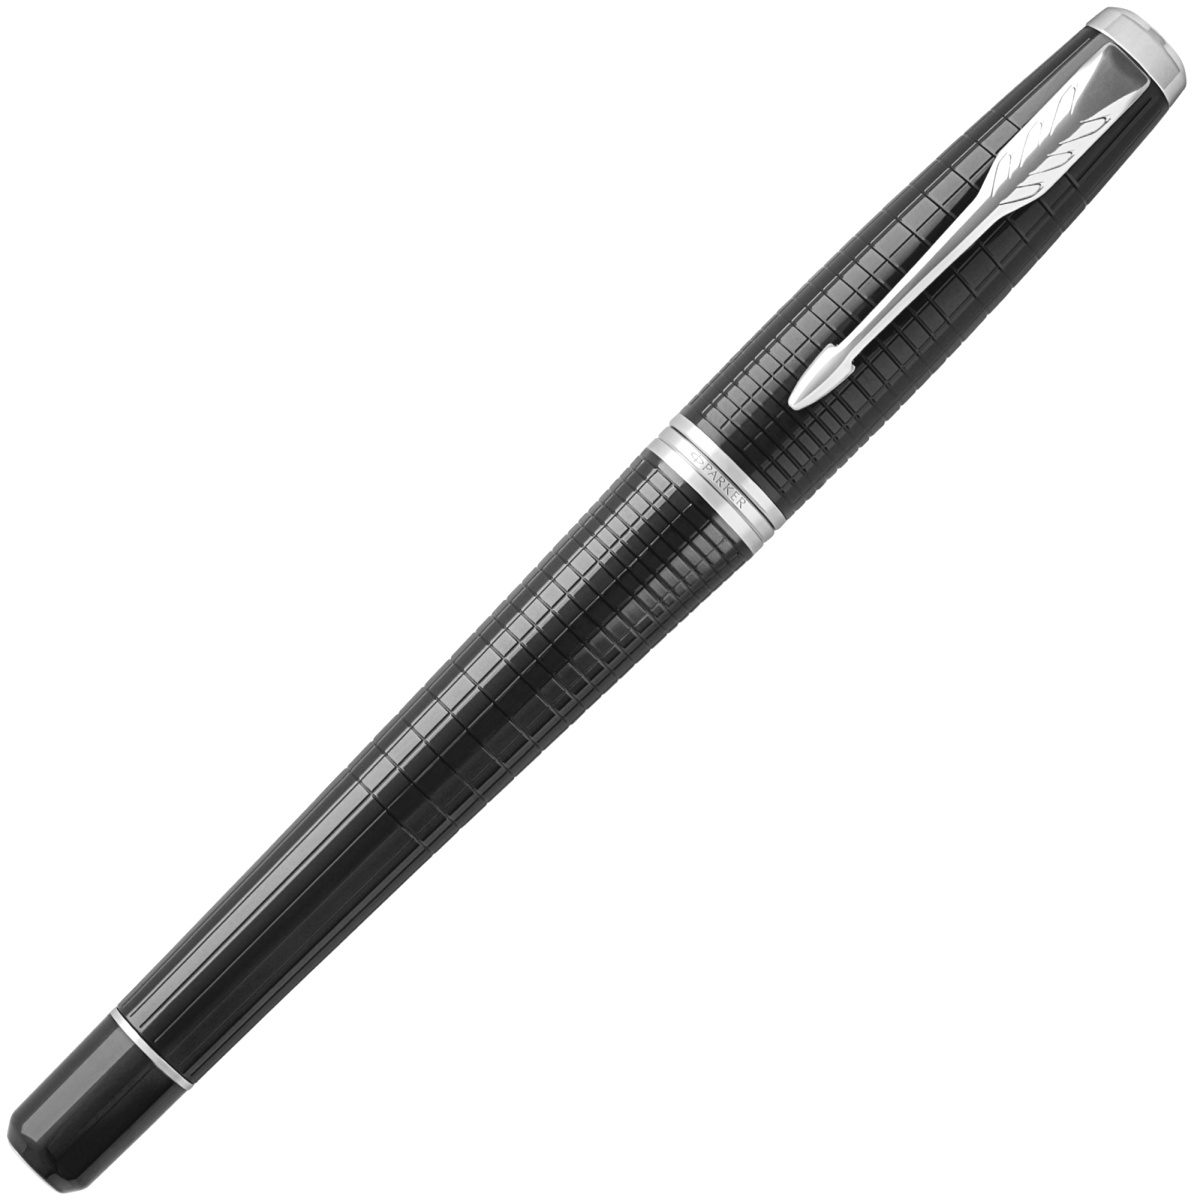  Ручка перьевая Parker Urban Premium F312, Ebony Metal CT (Перо F), фото 2